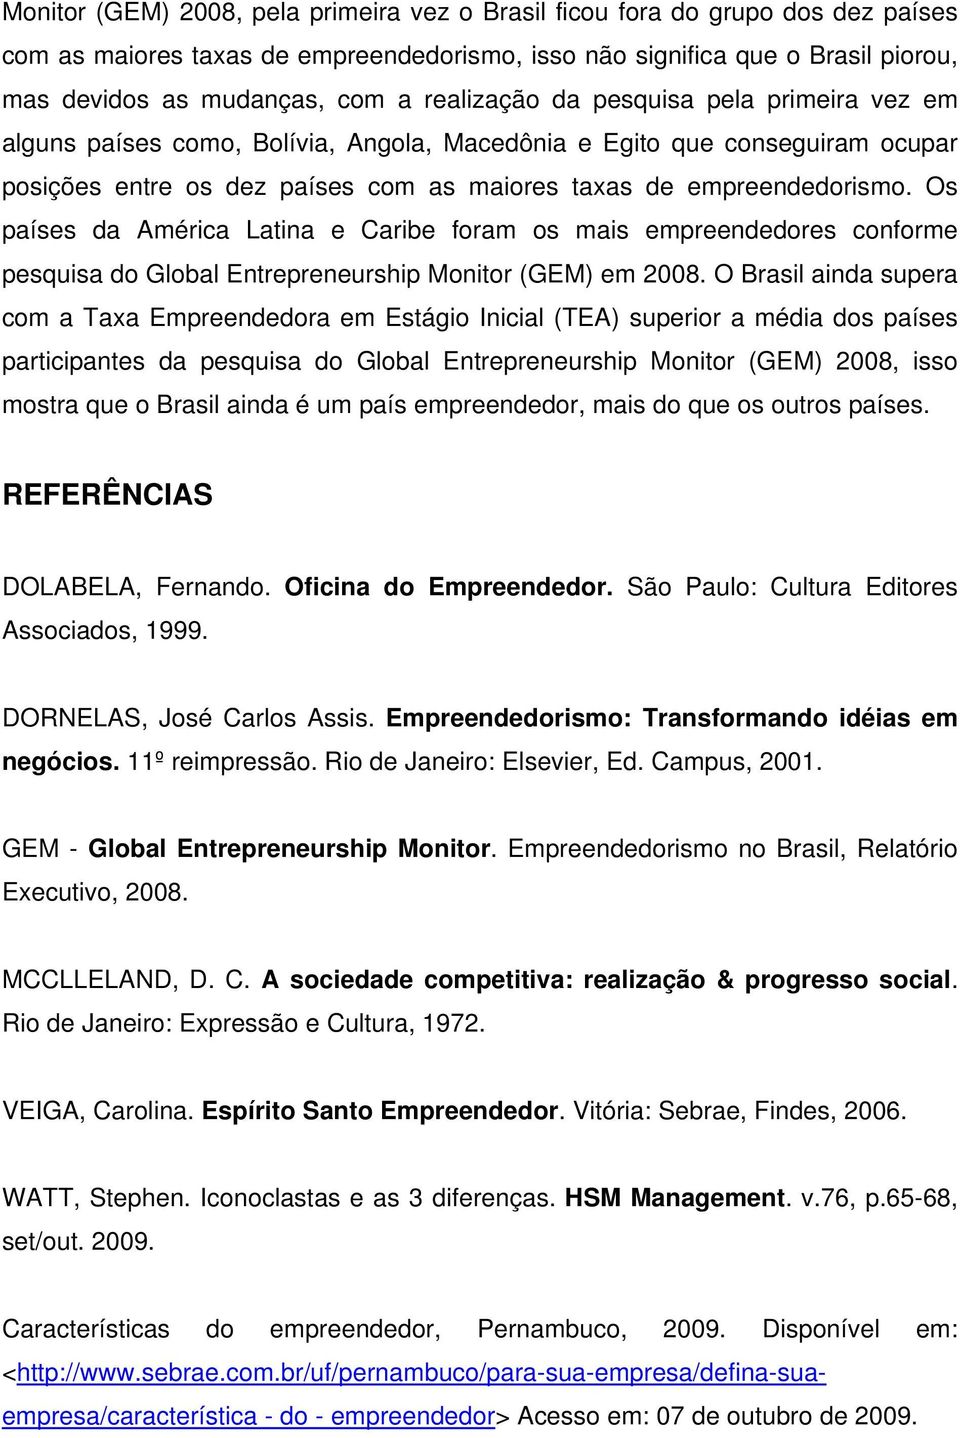 Os países da América Latina e Caribe foram os mais empreendedores conforme pesquisa do Global Entrepreneurship Monitor (GEM) em 2008.